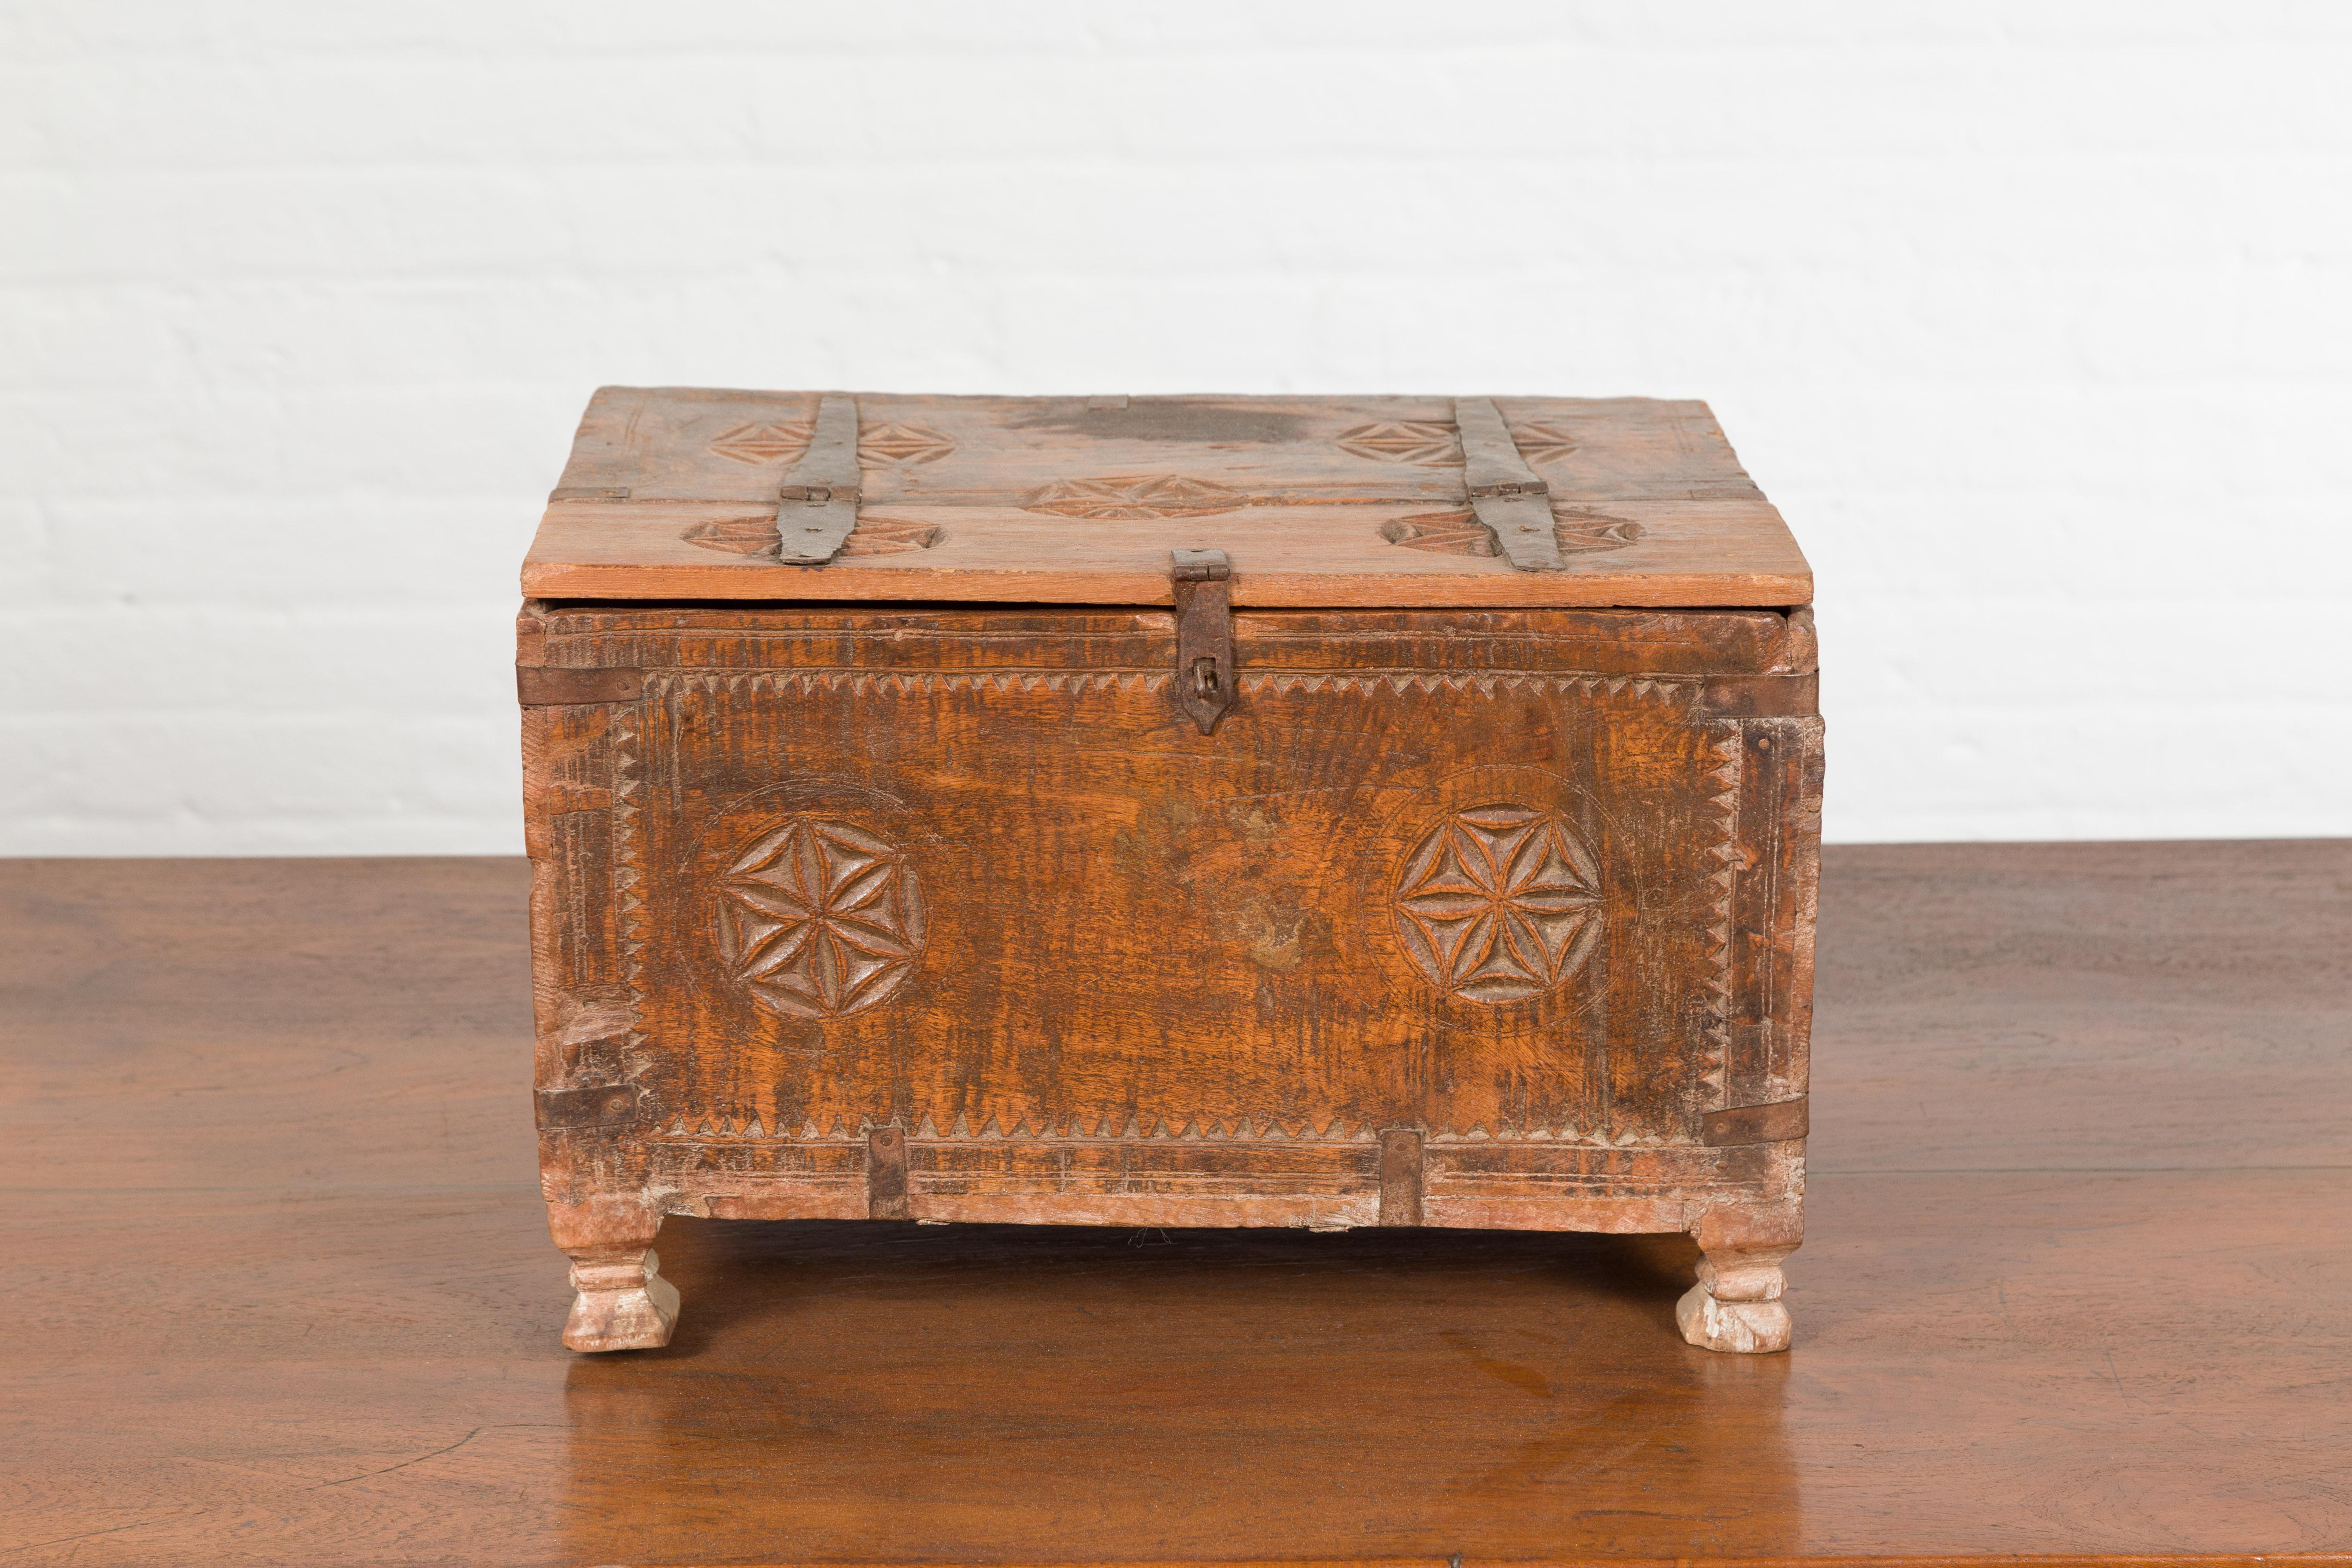 Une petite boîte indienne en bois du 19ème siècle, avec des ferrures en fer et une rosace sculptée. Créée en Inde au XIXe siècle, cette boîte en bois présente un couvercle rectangulaire s'ouvrant à moitié pour révéler un petit intérieur. Agrémentée